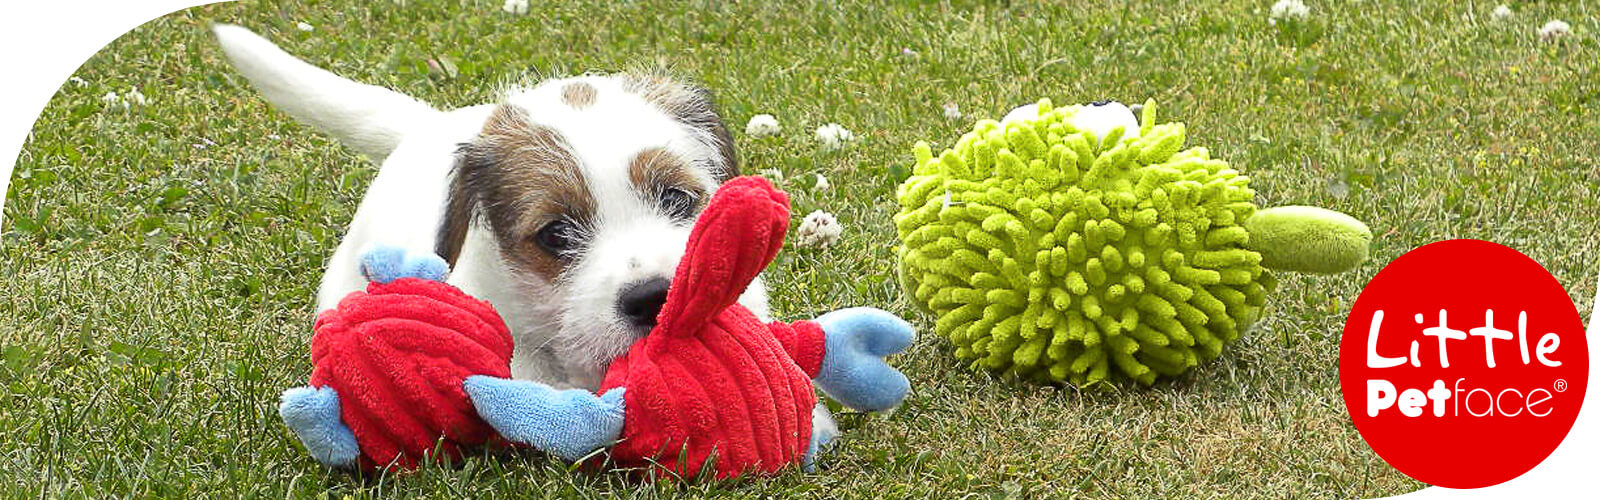 Little Petface - Spielfreude für junge Hunde und Welpen